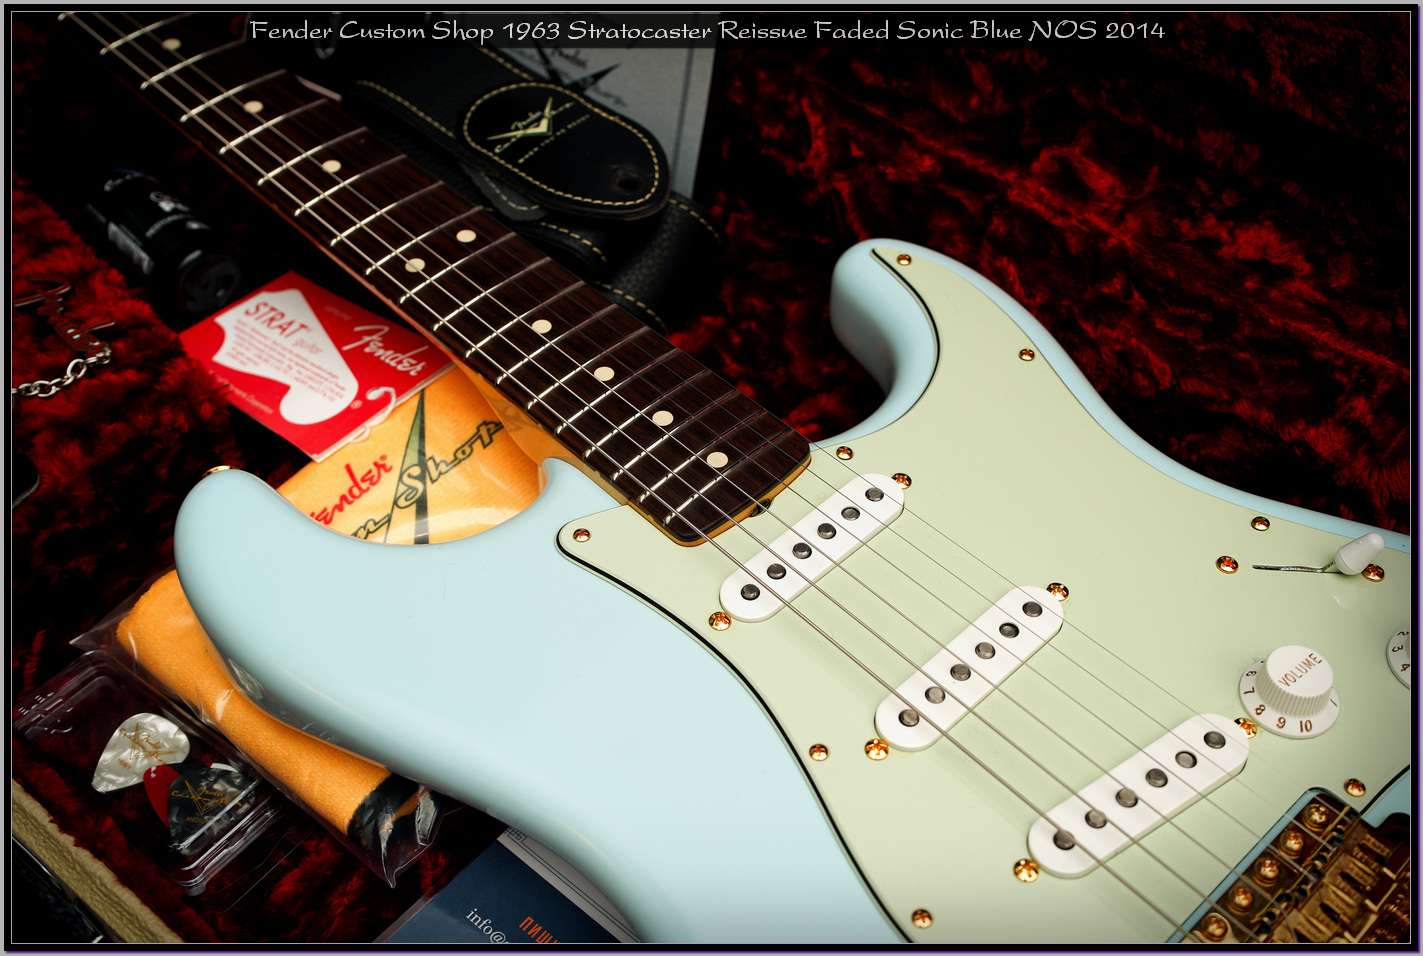 Fender Custom Shop 1963 Stratocaster Reissue Faded Sonic Blue NOS 2014 13_x1400.jpg